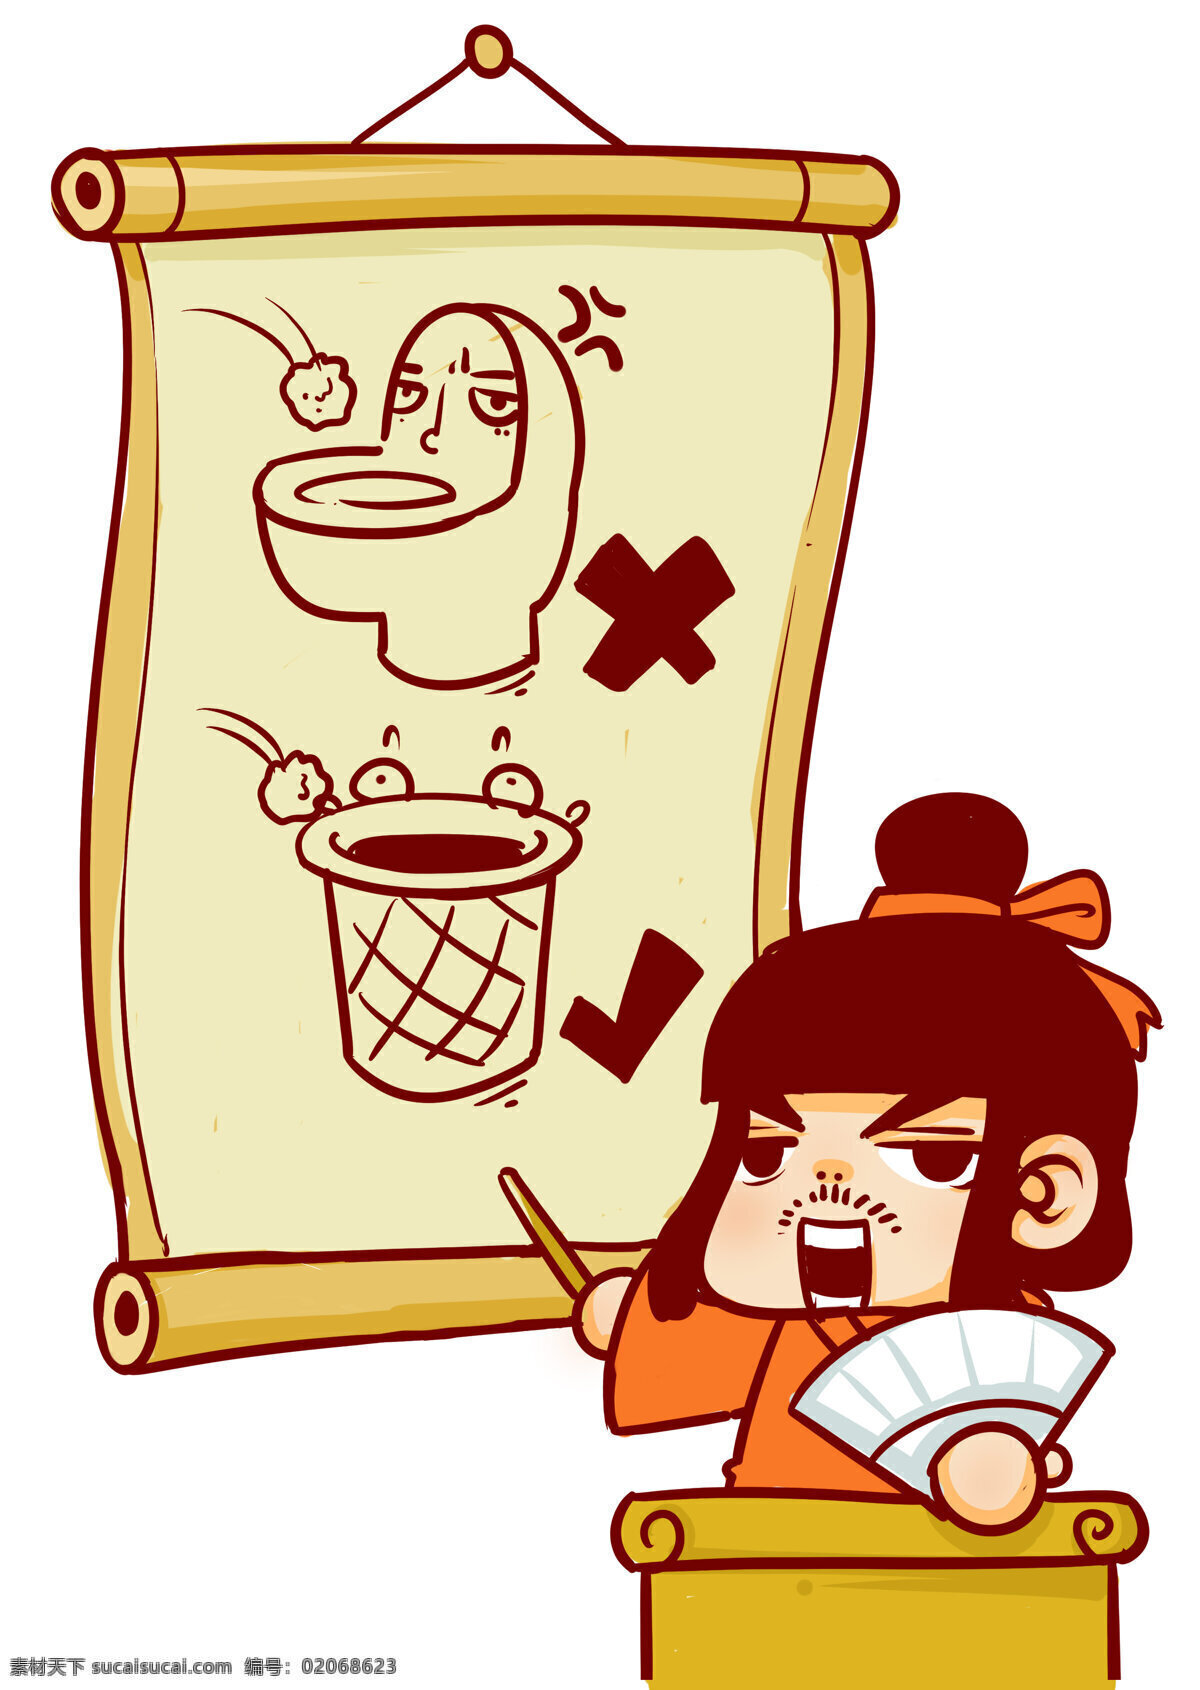 厕所警示漫画 厕所警示 中国礼仪 漫画 传统 国学经典 动漫动画 动漫人物